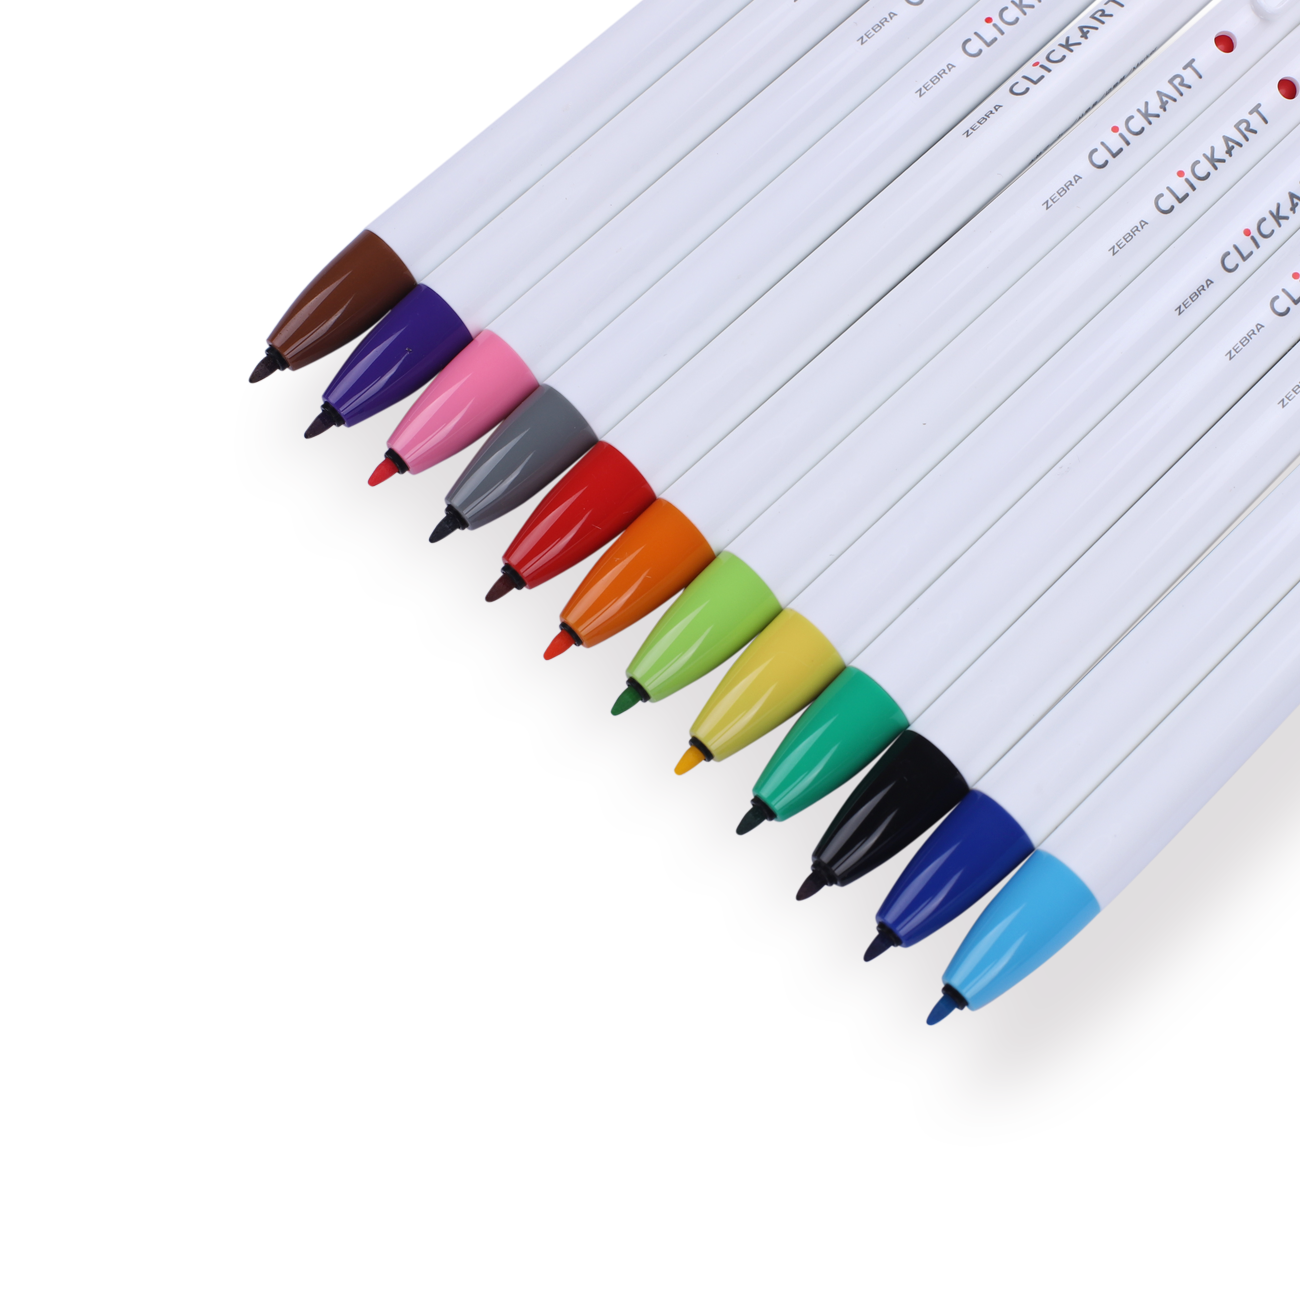 Zebra Clickart Retractable Sign Pen - 0.6 mm - 12 Color Set ST